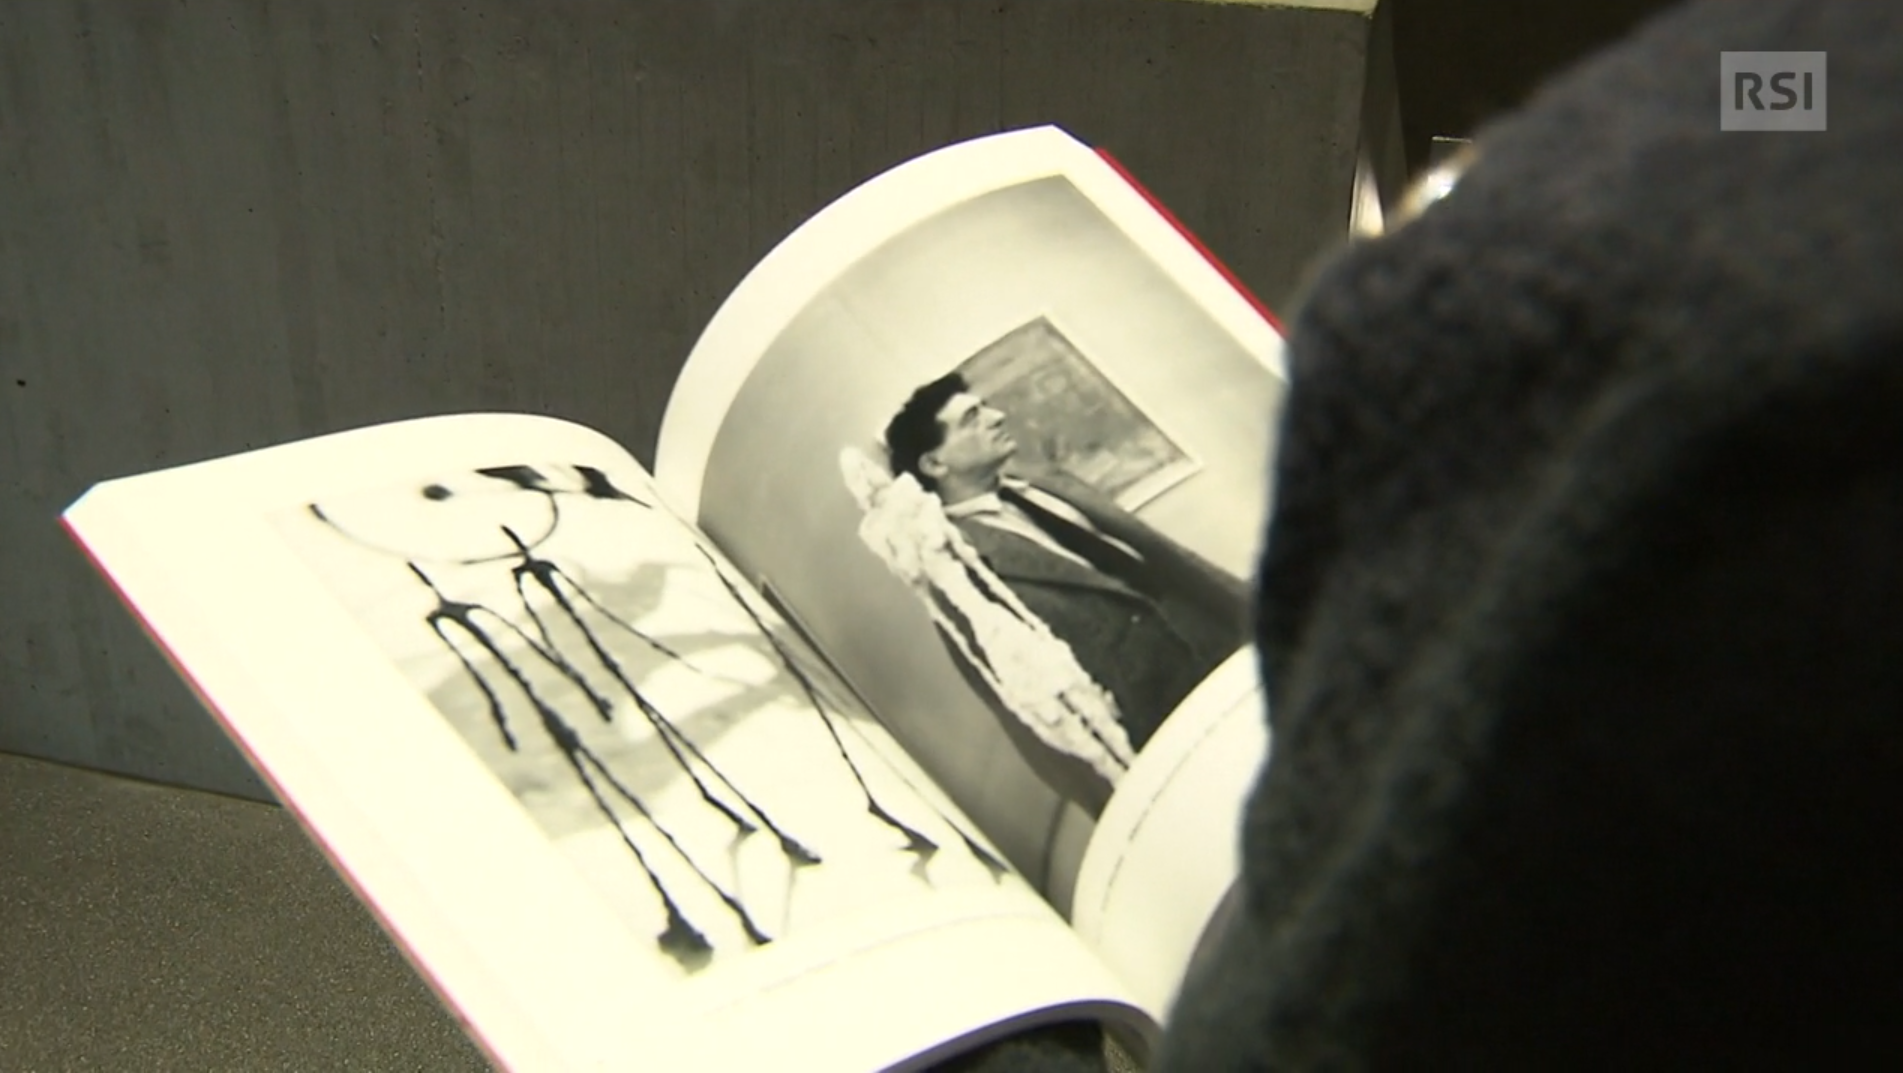 Uoo di schiena sfoglia un catalogo con fotografie; in una si vede l artista Alberto Giacometti